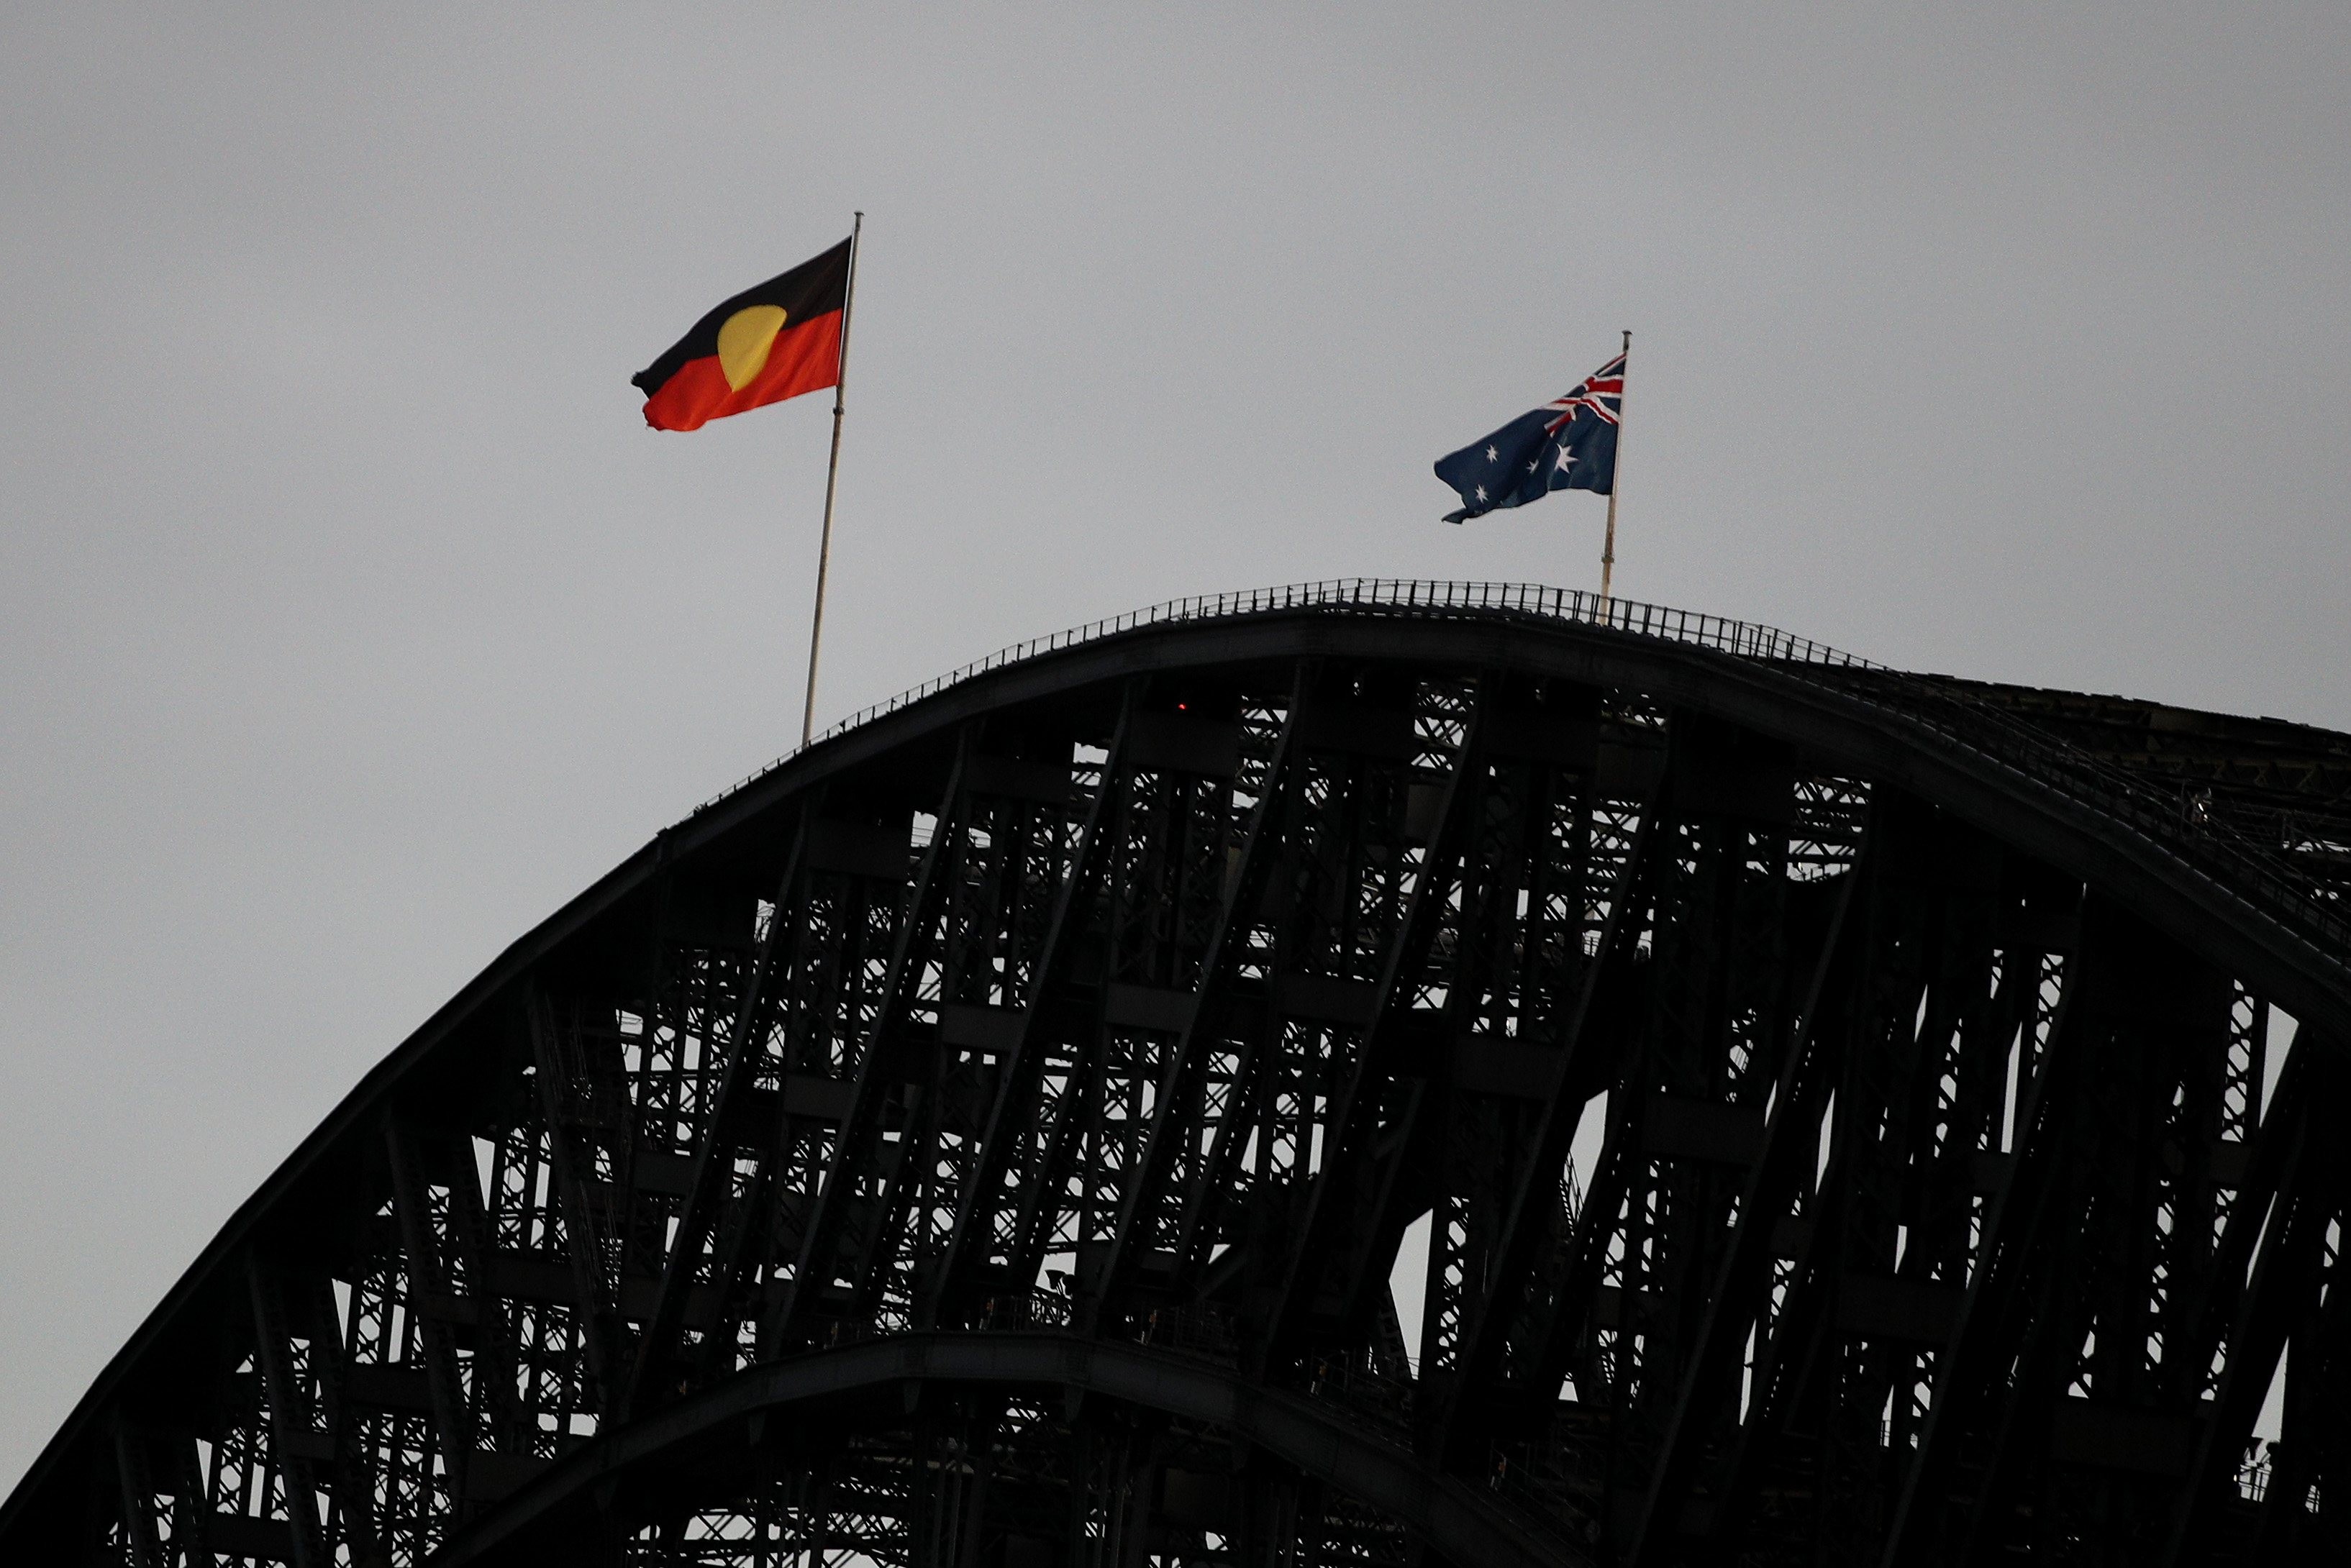 Celebração do Dia da Austrália a 26 de janeiro, apelidada pela população aborígene como Dia da Invasão, uma vez que marca a tomada da Austrália pelos britânicos em 1788